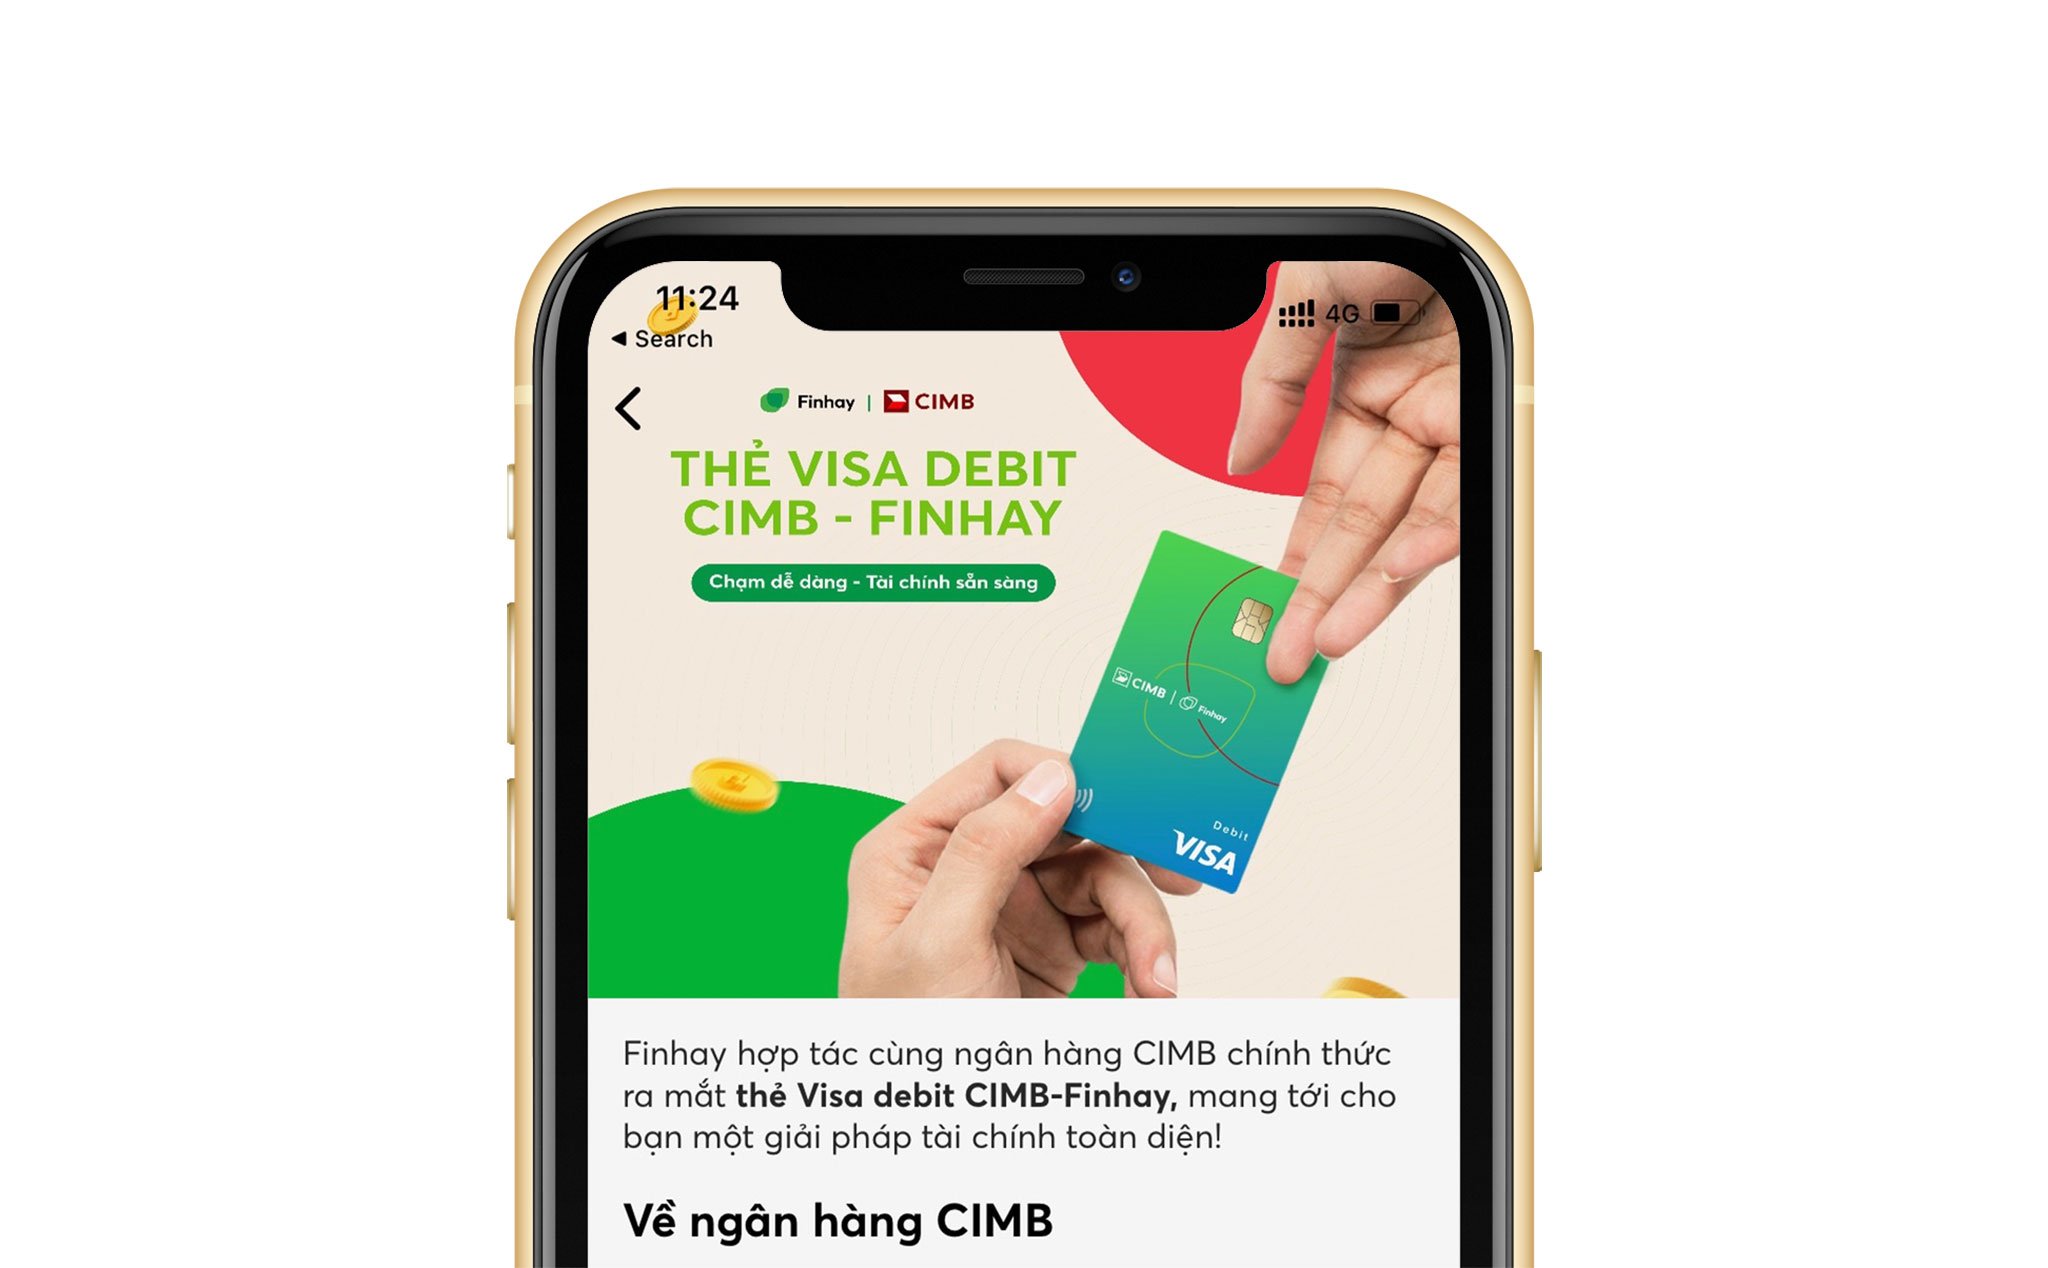 Mở thẻ VISA Debit CIMB-FINHAY với ưu đãi miễn phí rút tiền từ Finhay và nhiều dịch vụ khác